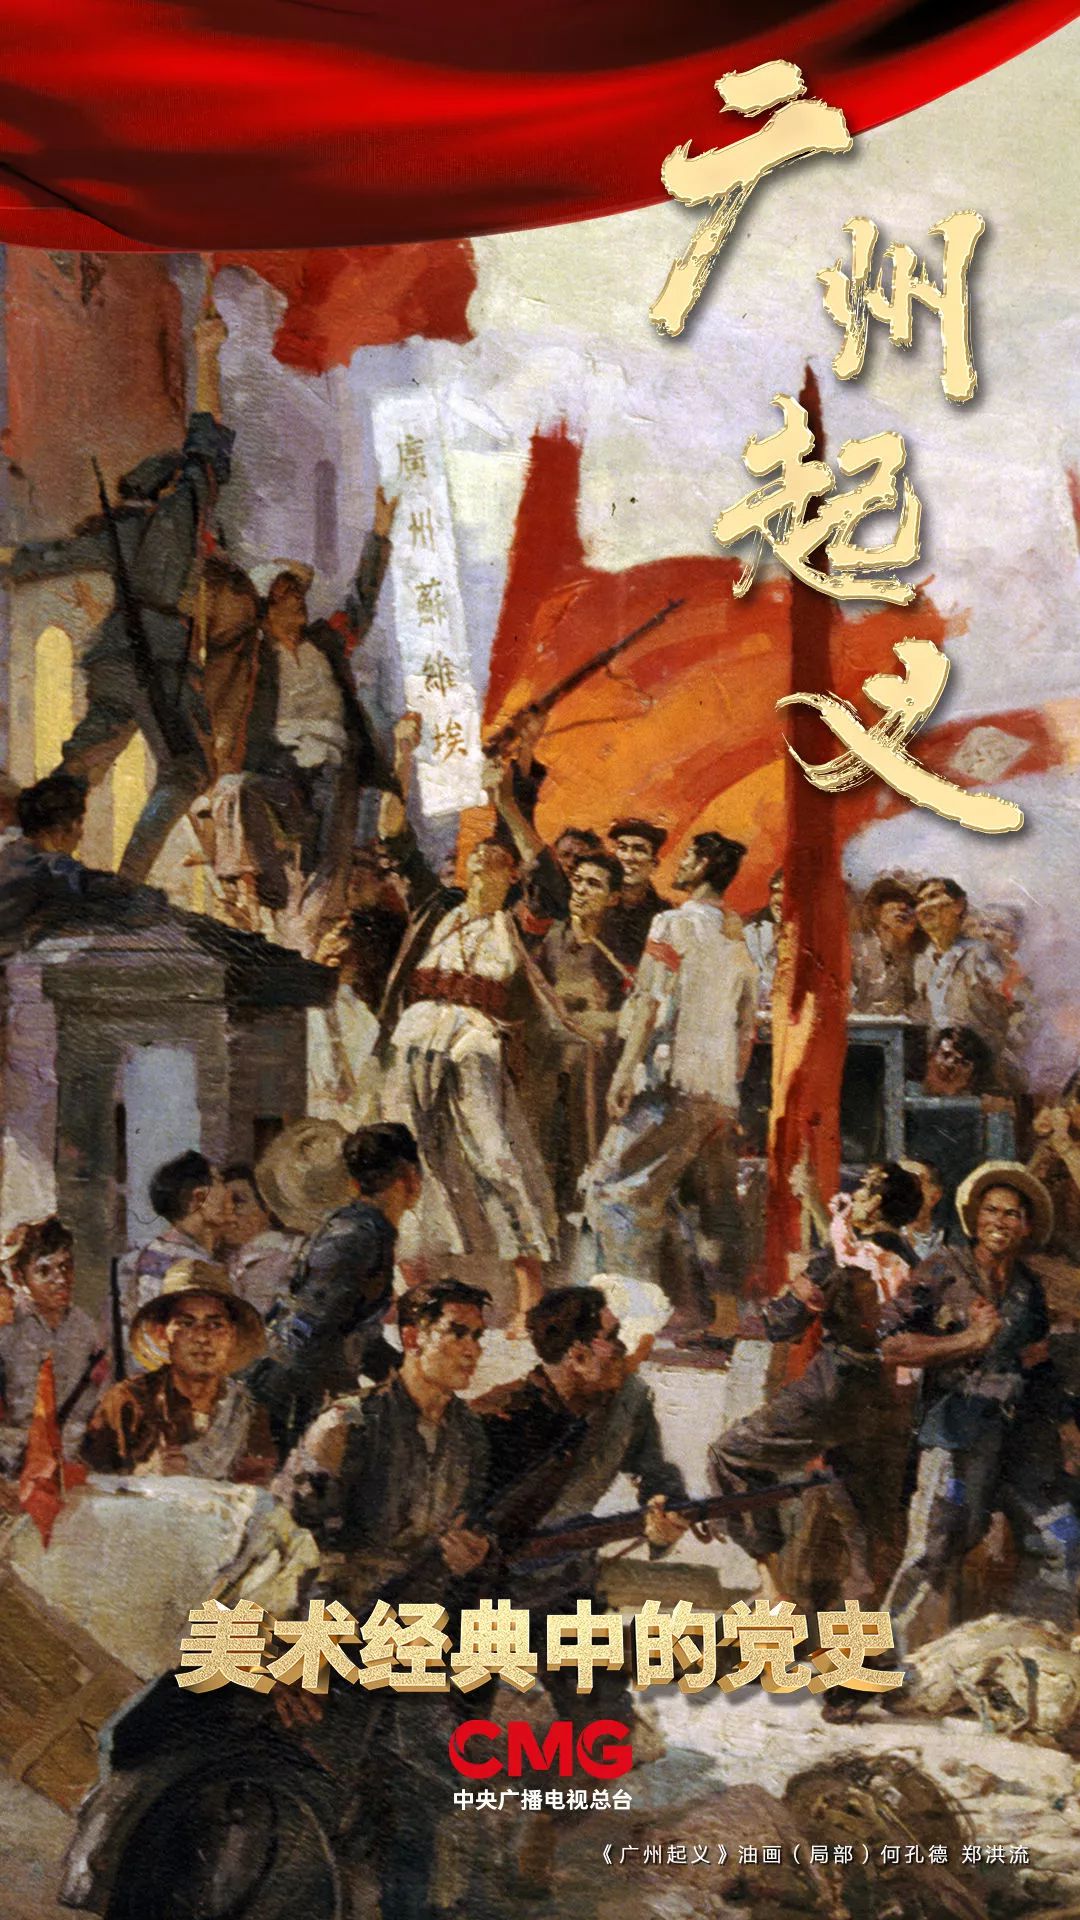 《美术经典中的党史》邀请您走近油画《广州起义》